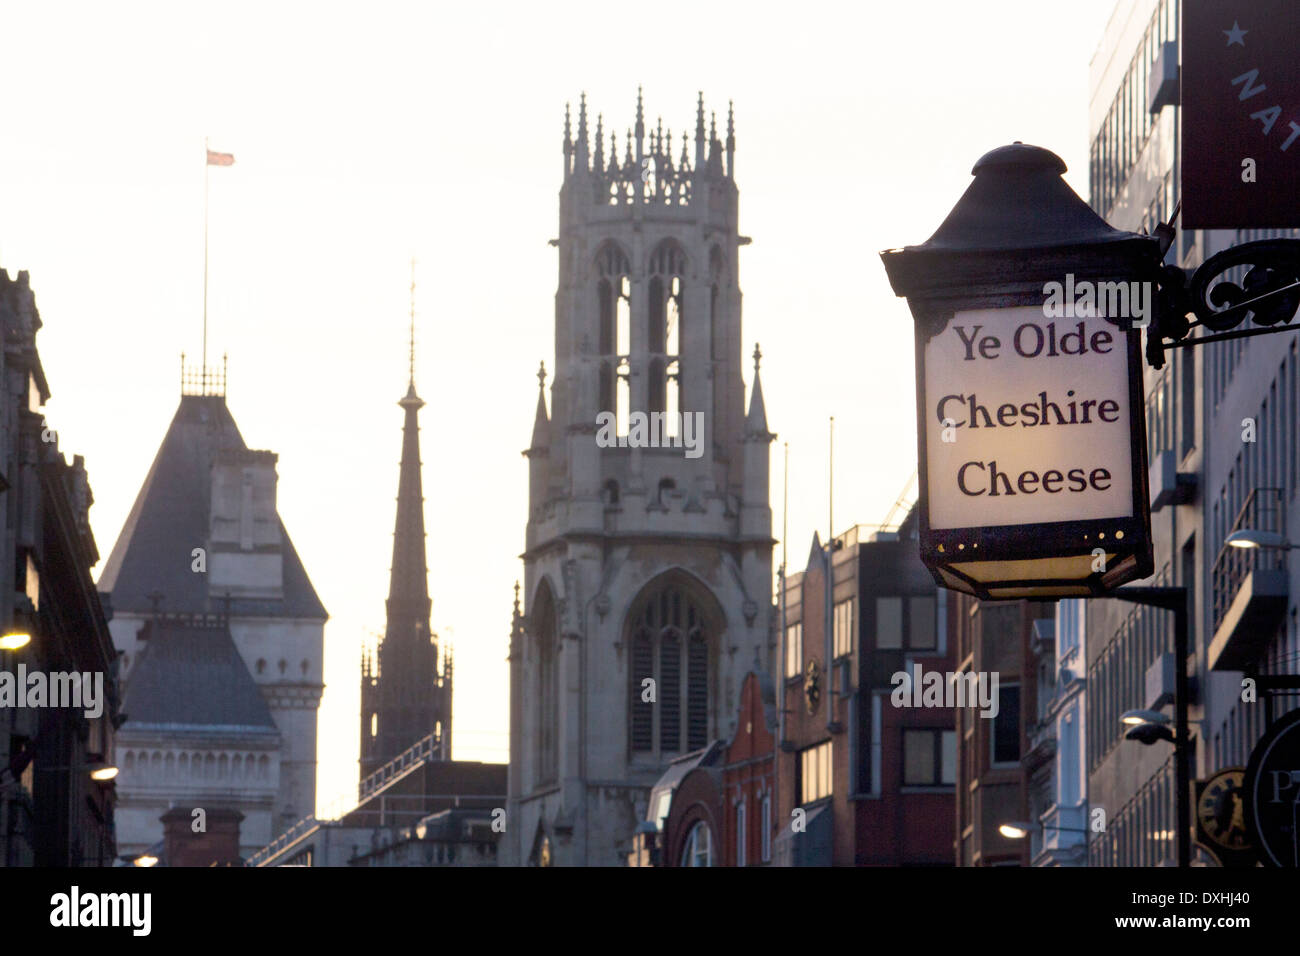 Ye Olde Cheshire Cheese enseigne de pub et St Dunstan dans le clocher de l'église de l'Ouest au coucher du soleil Fleet Street Ville de London England UK Banque D'Images